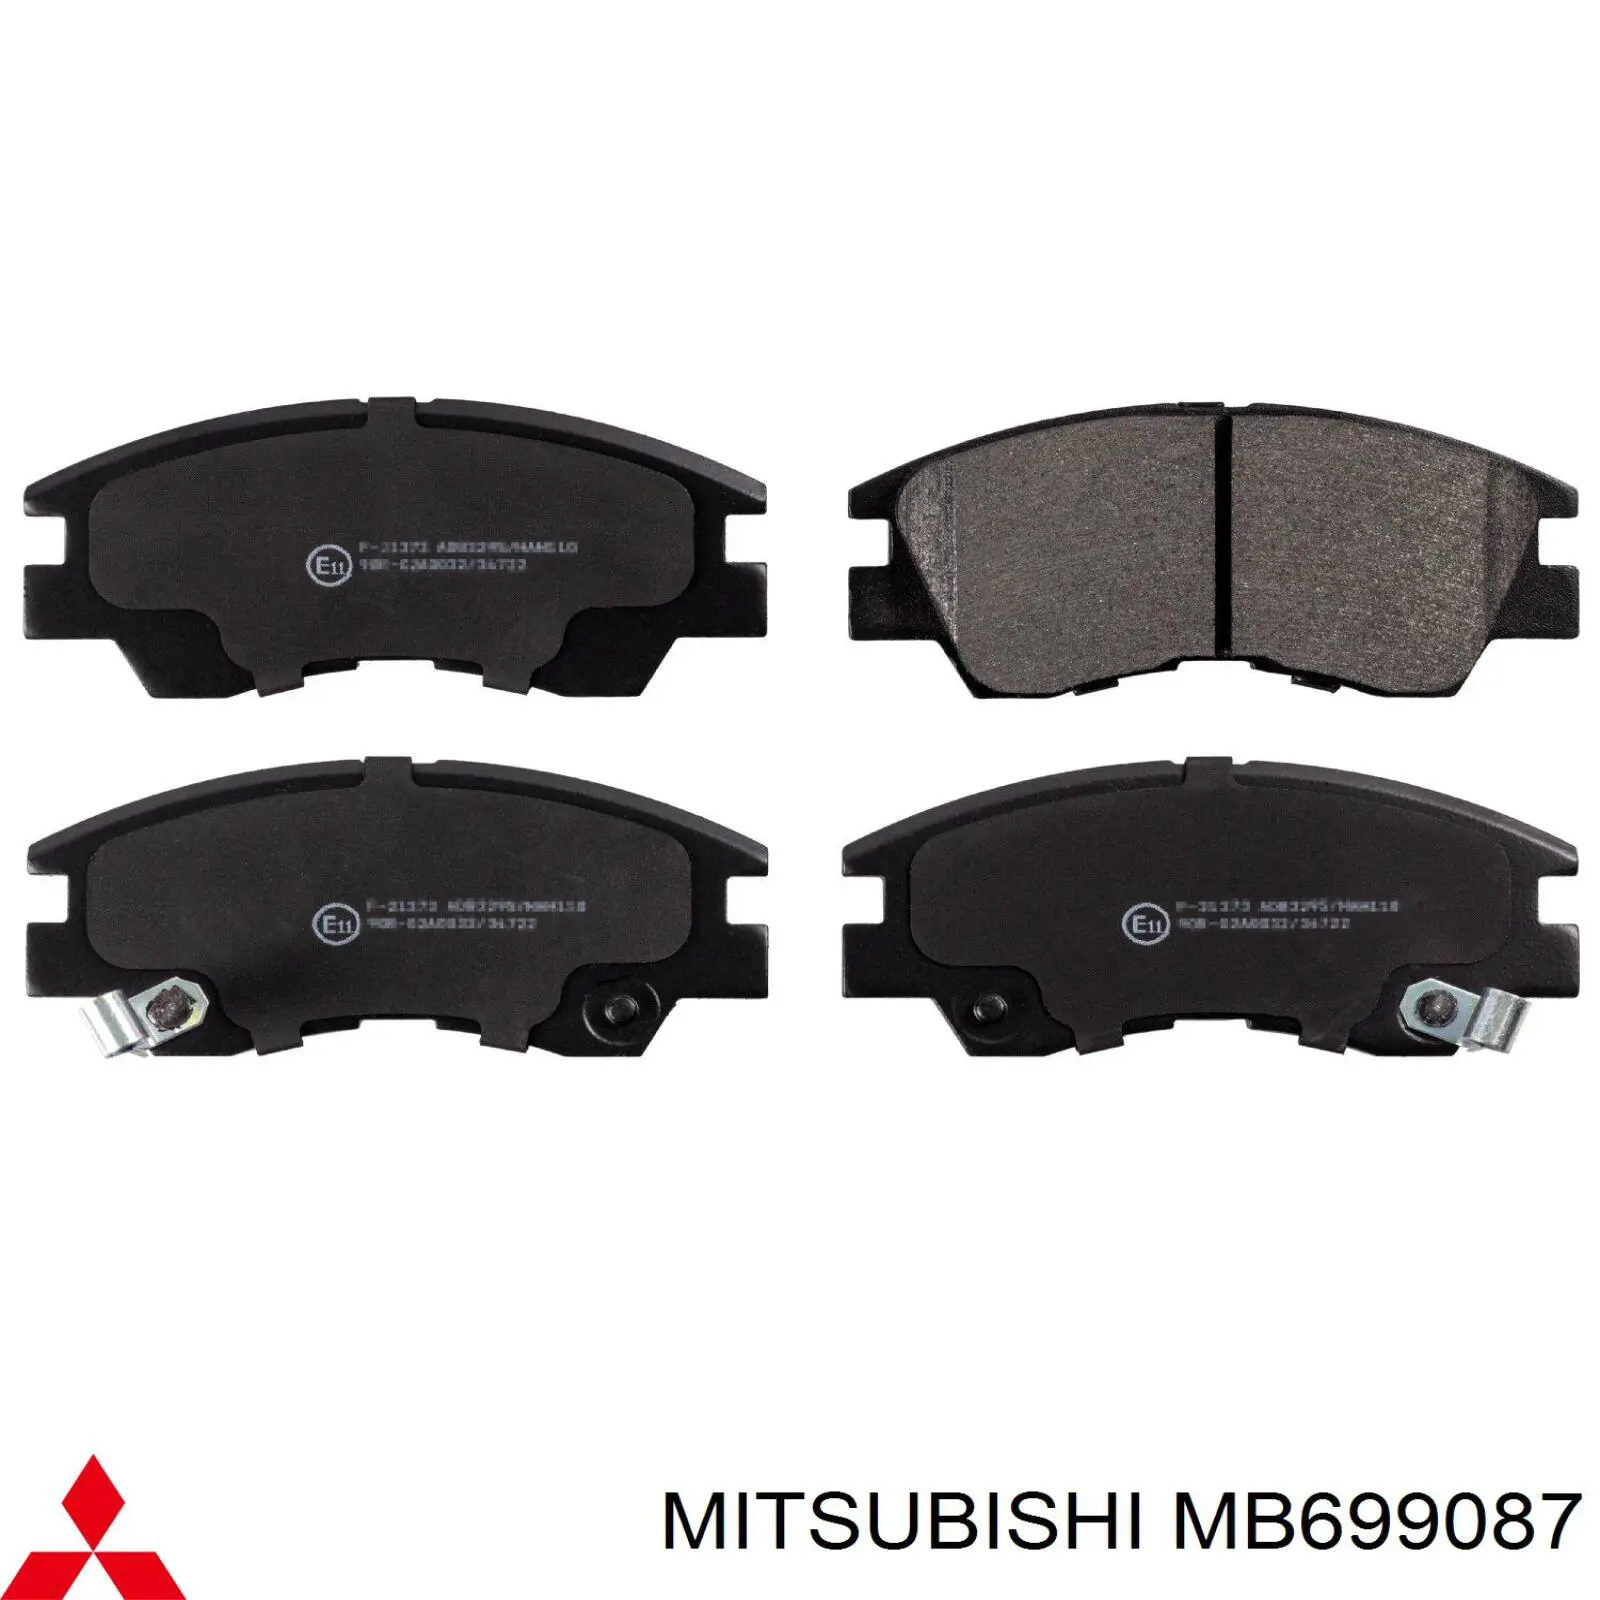 MB699087 Mitsubishi pastillas de freno delanteras